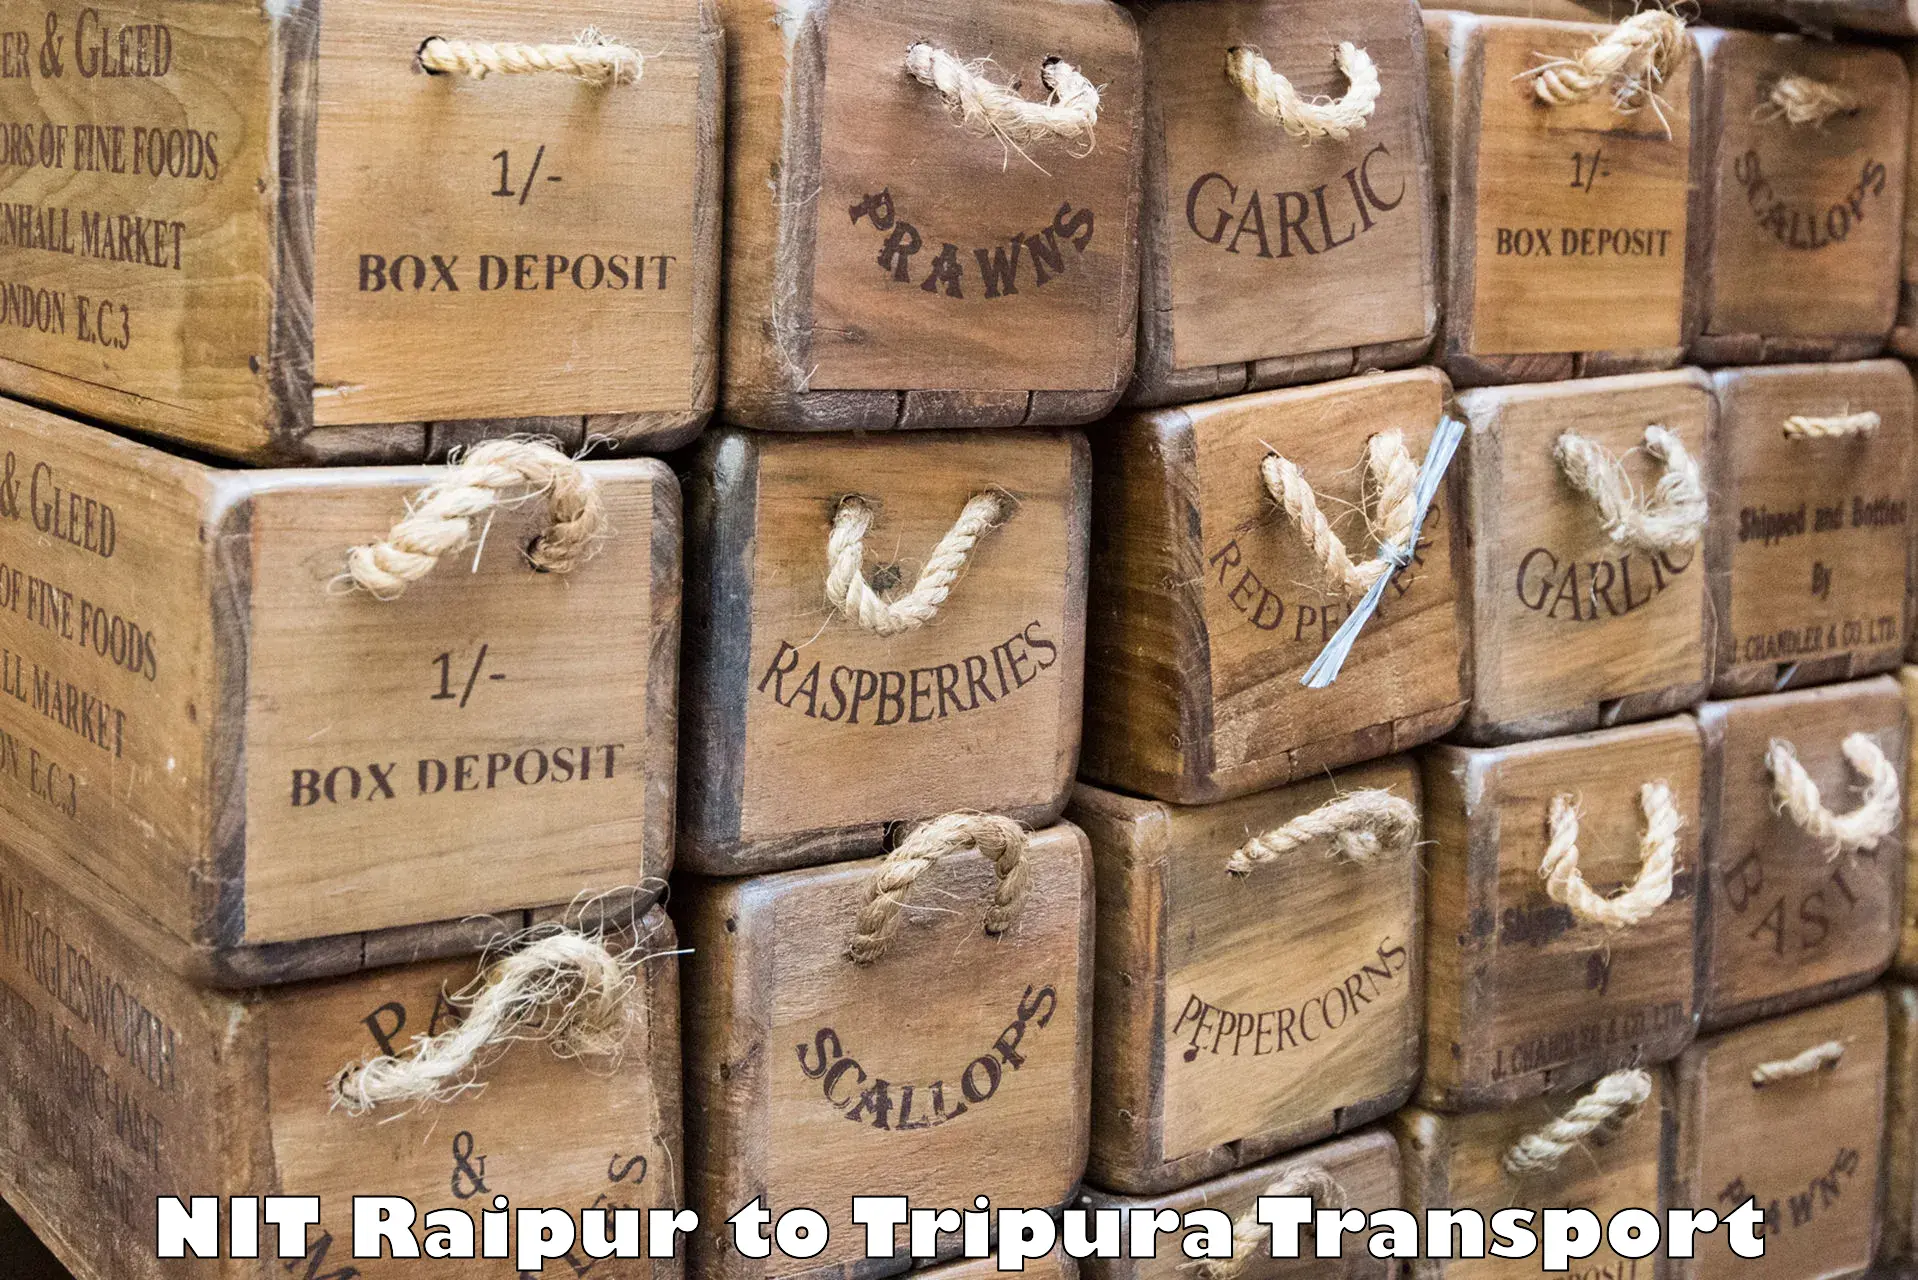 Nearest transport service NIT Raipur to Aambasa